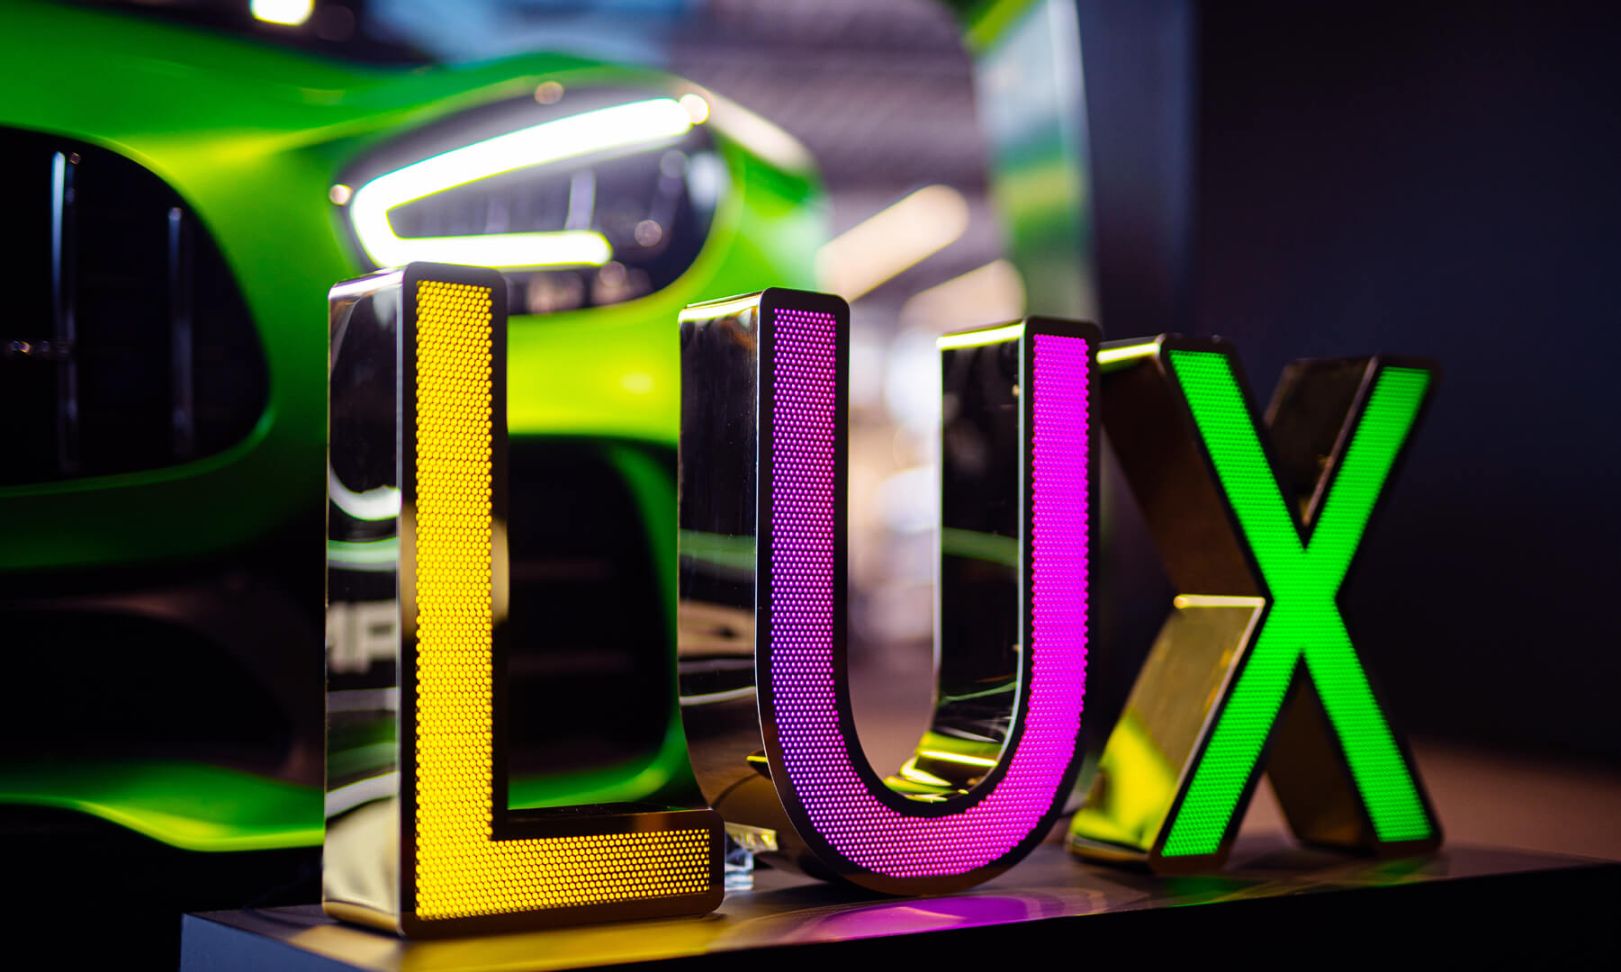 Lettere in acciaio inox perforato LUX - Scritta LUX in acciaio inox perforato, illuminata a LED in tre colori, su sfondo Mercedes